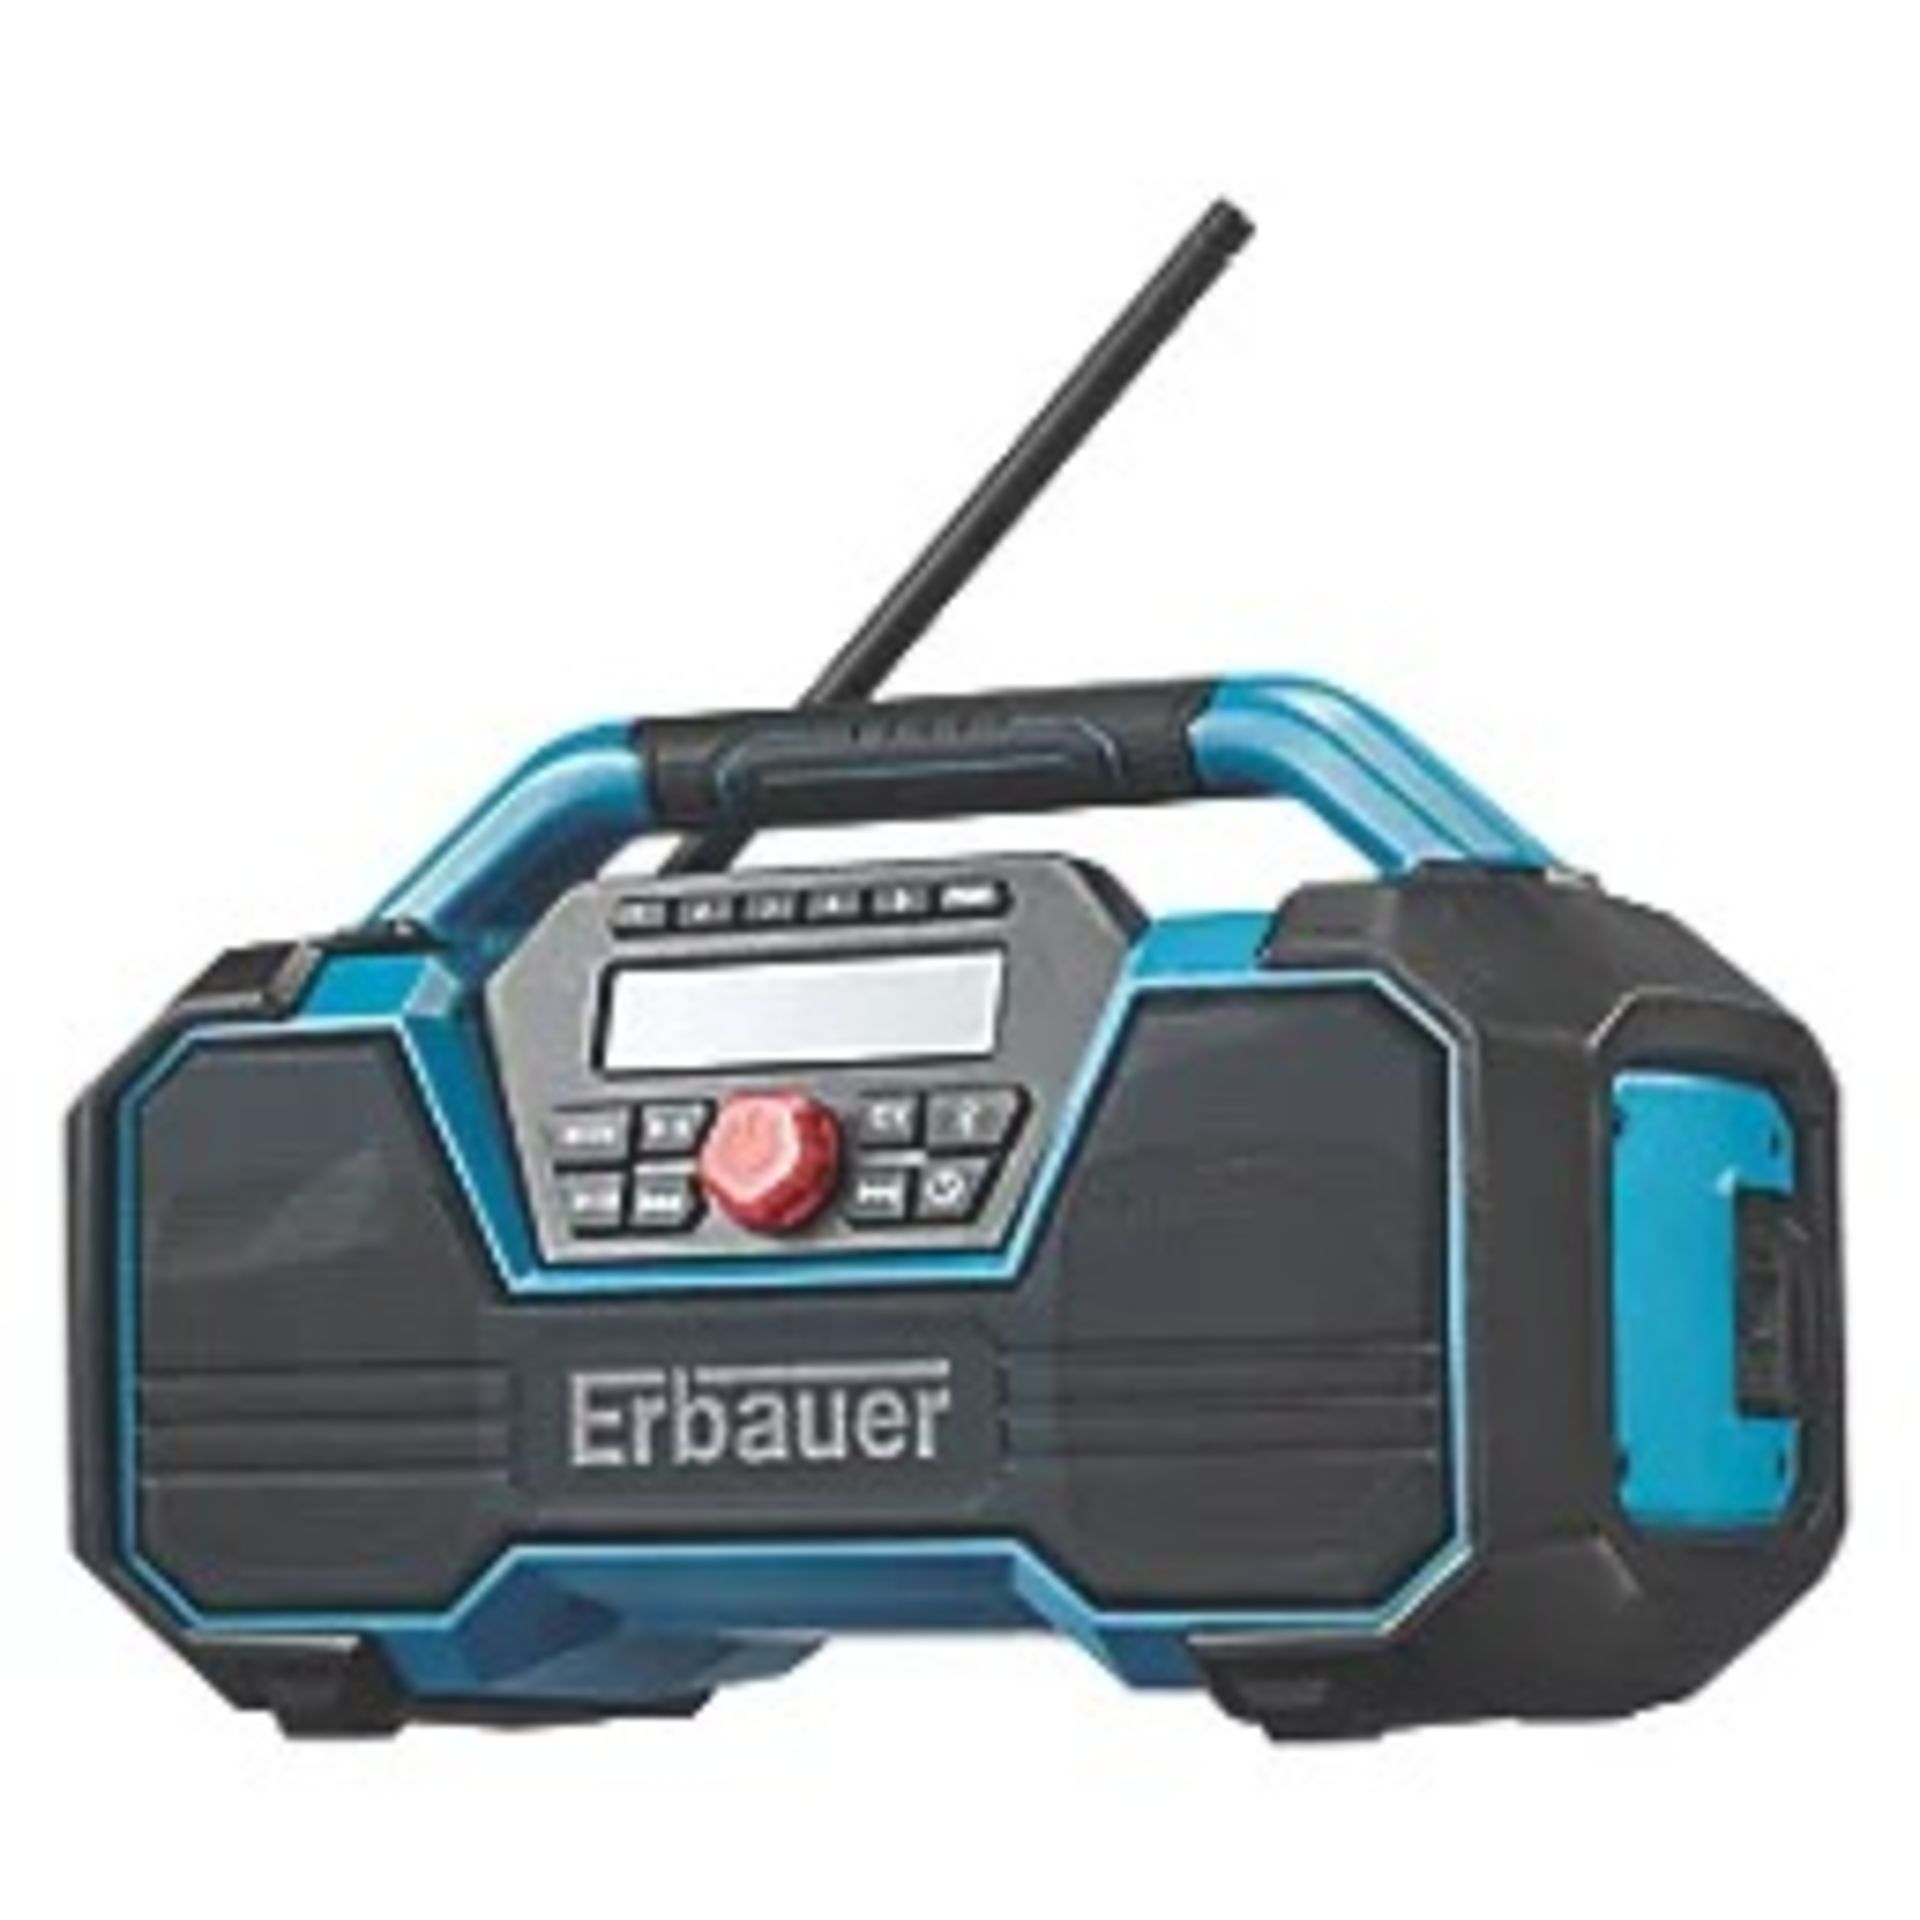 ERBAUER ERD18-LI 230V OR 18V DAB / FM RADIO (357VV) - ER45